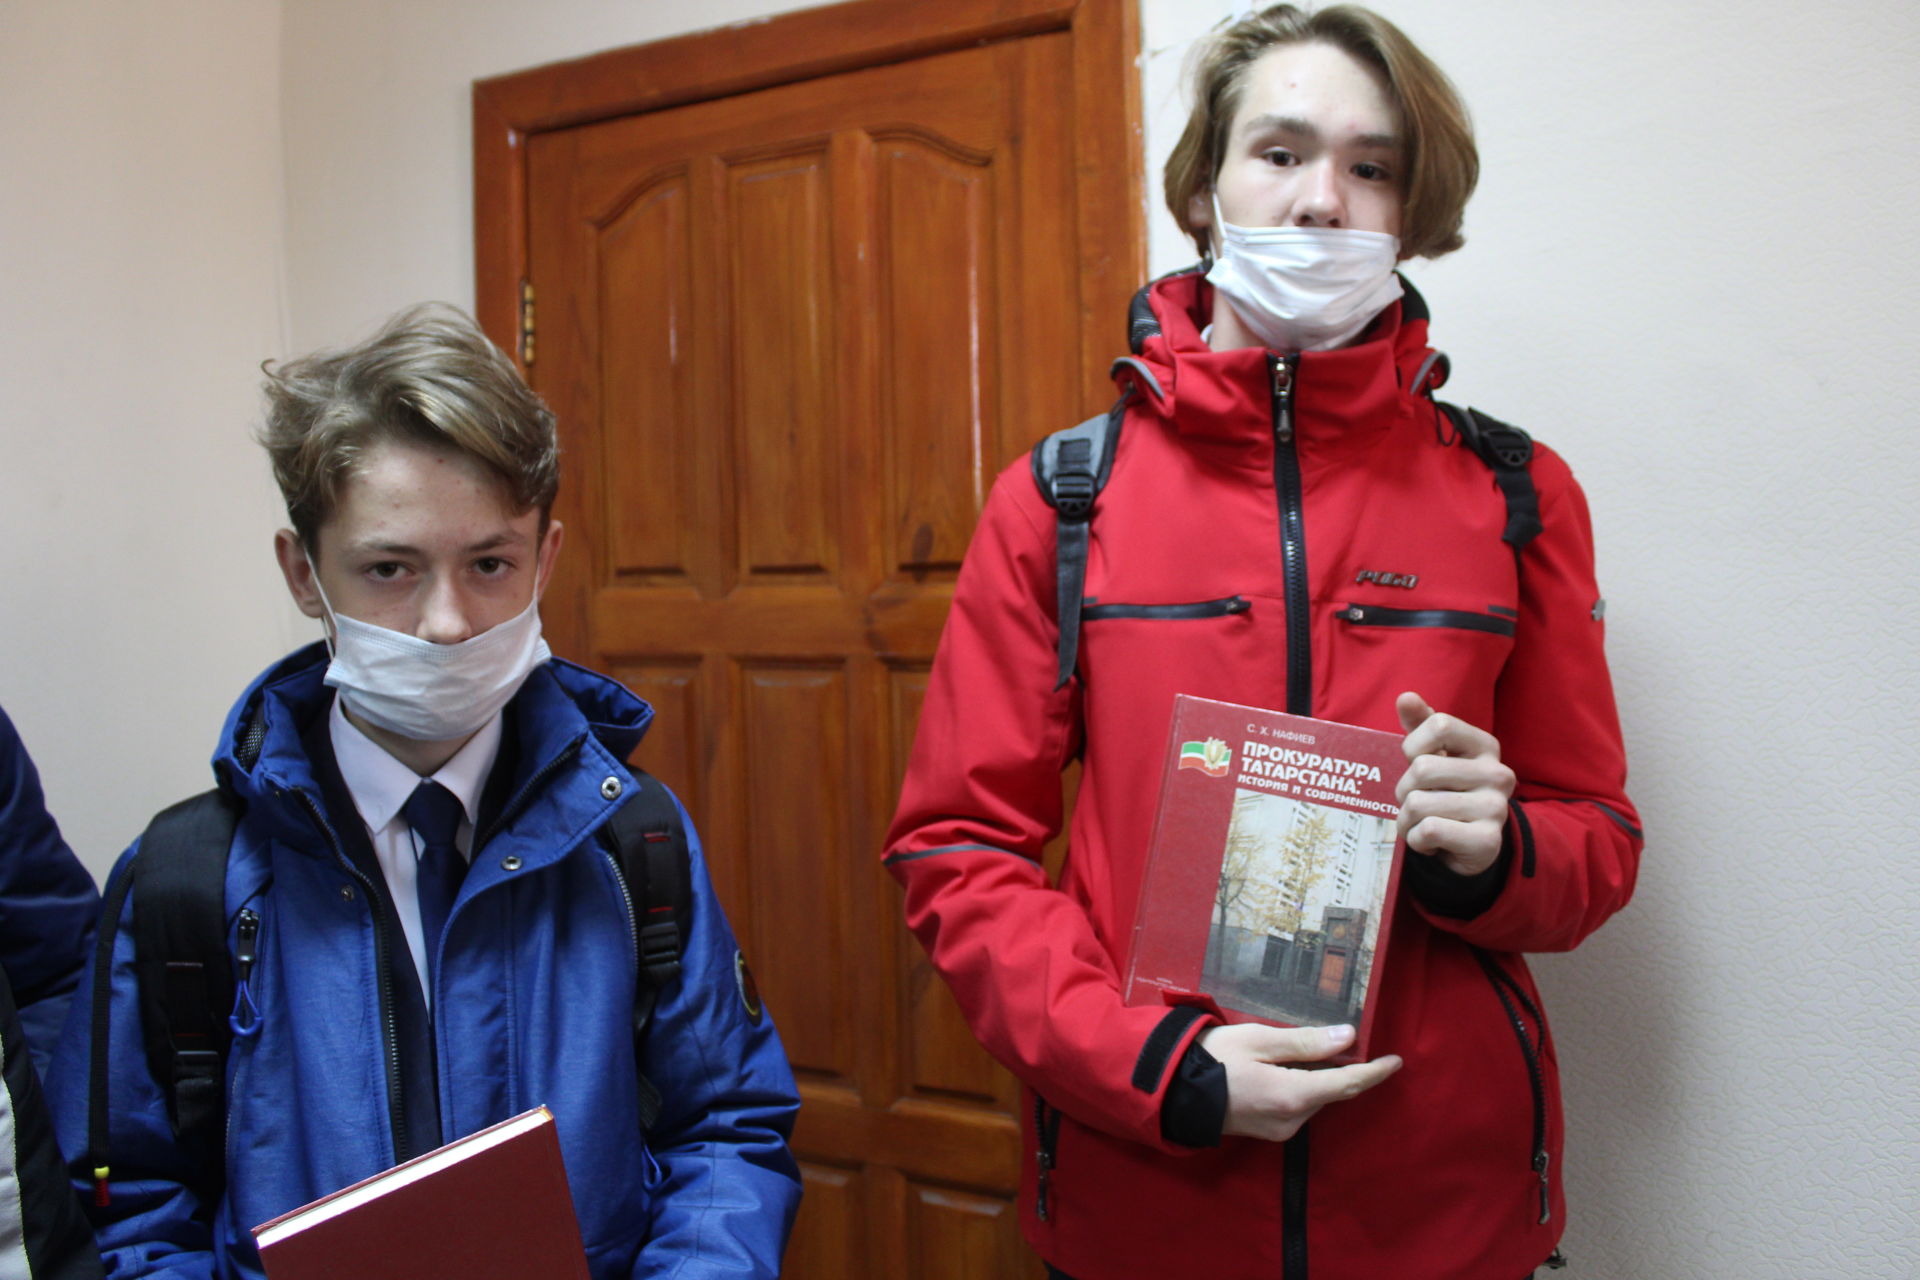 Кукморские школьники побывали на экскурсии в прокуратуре района